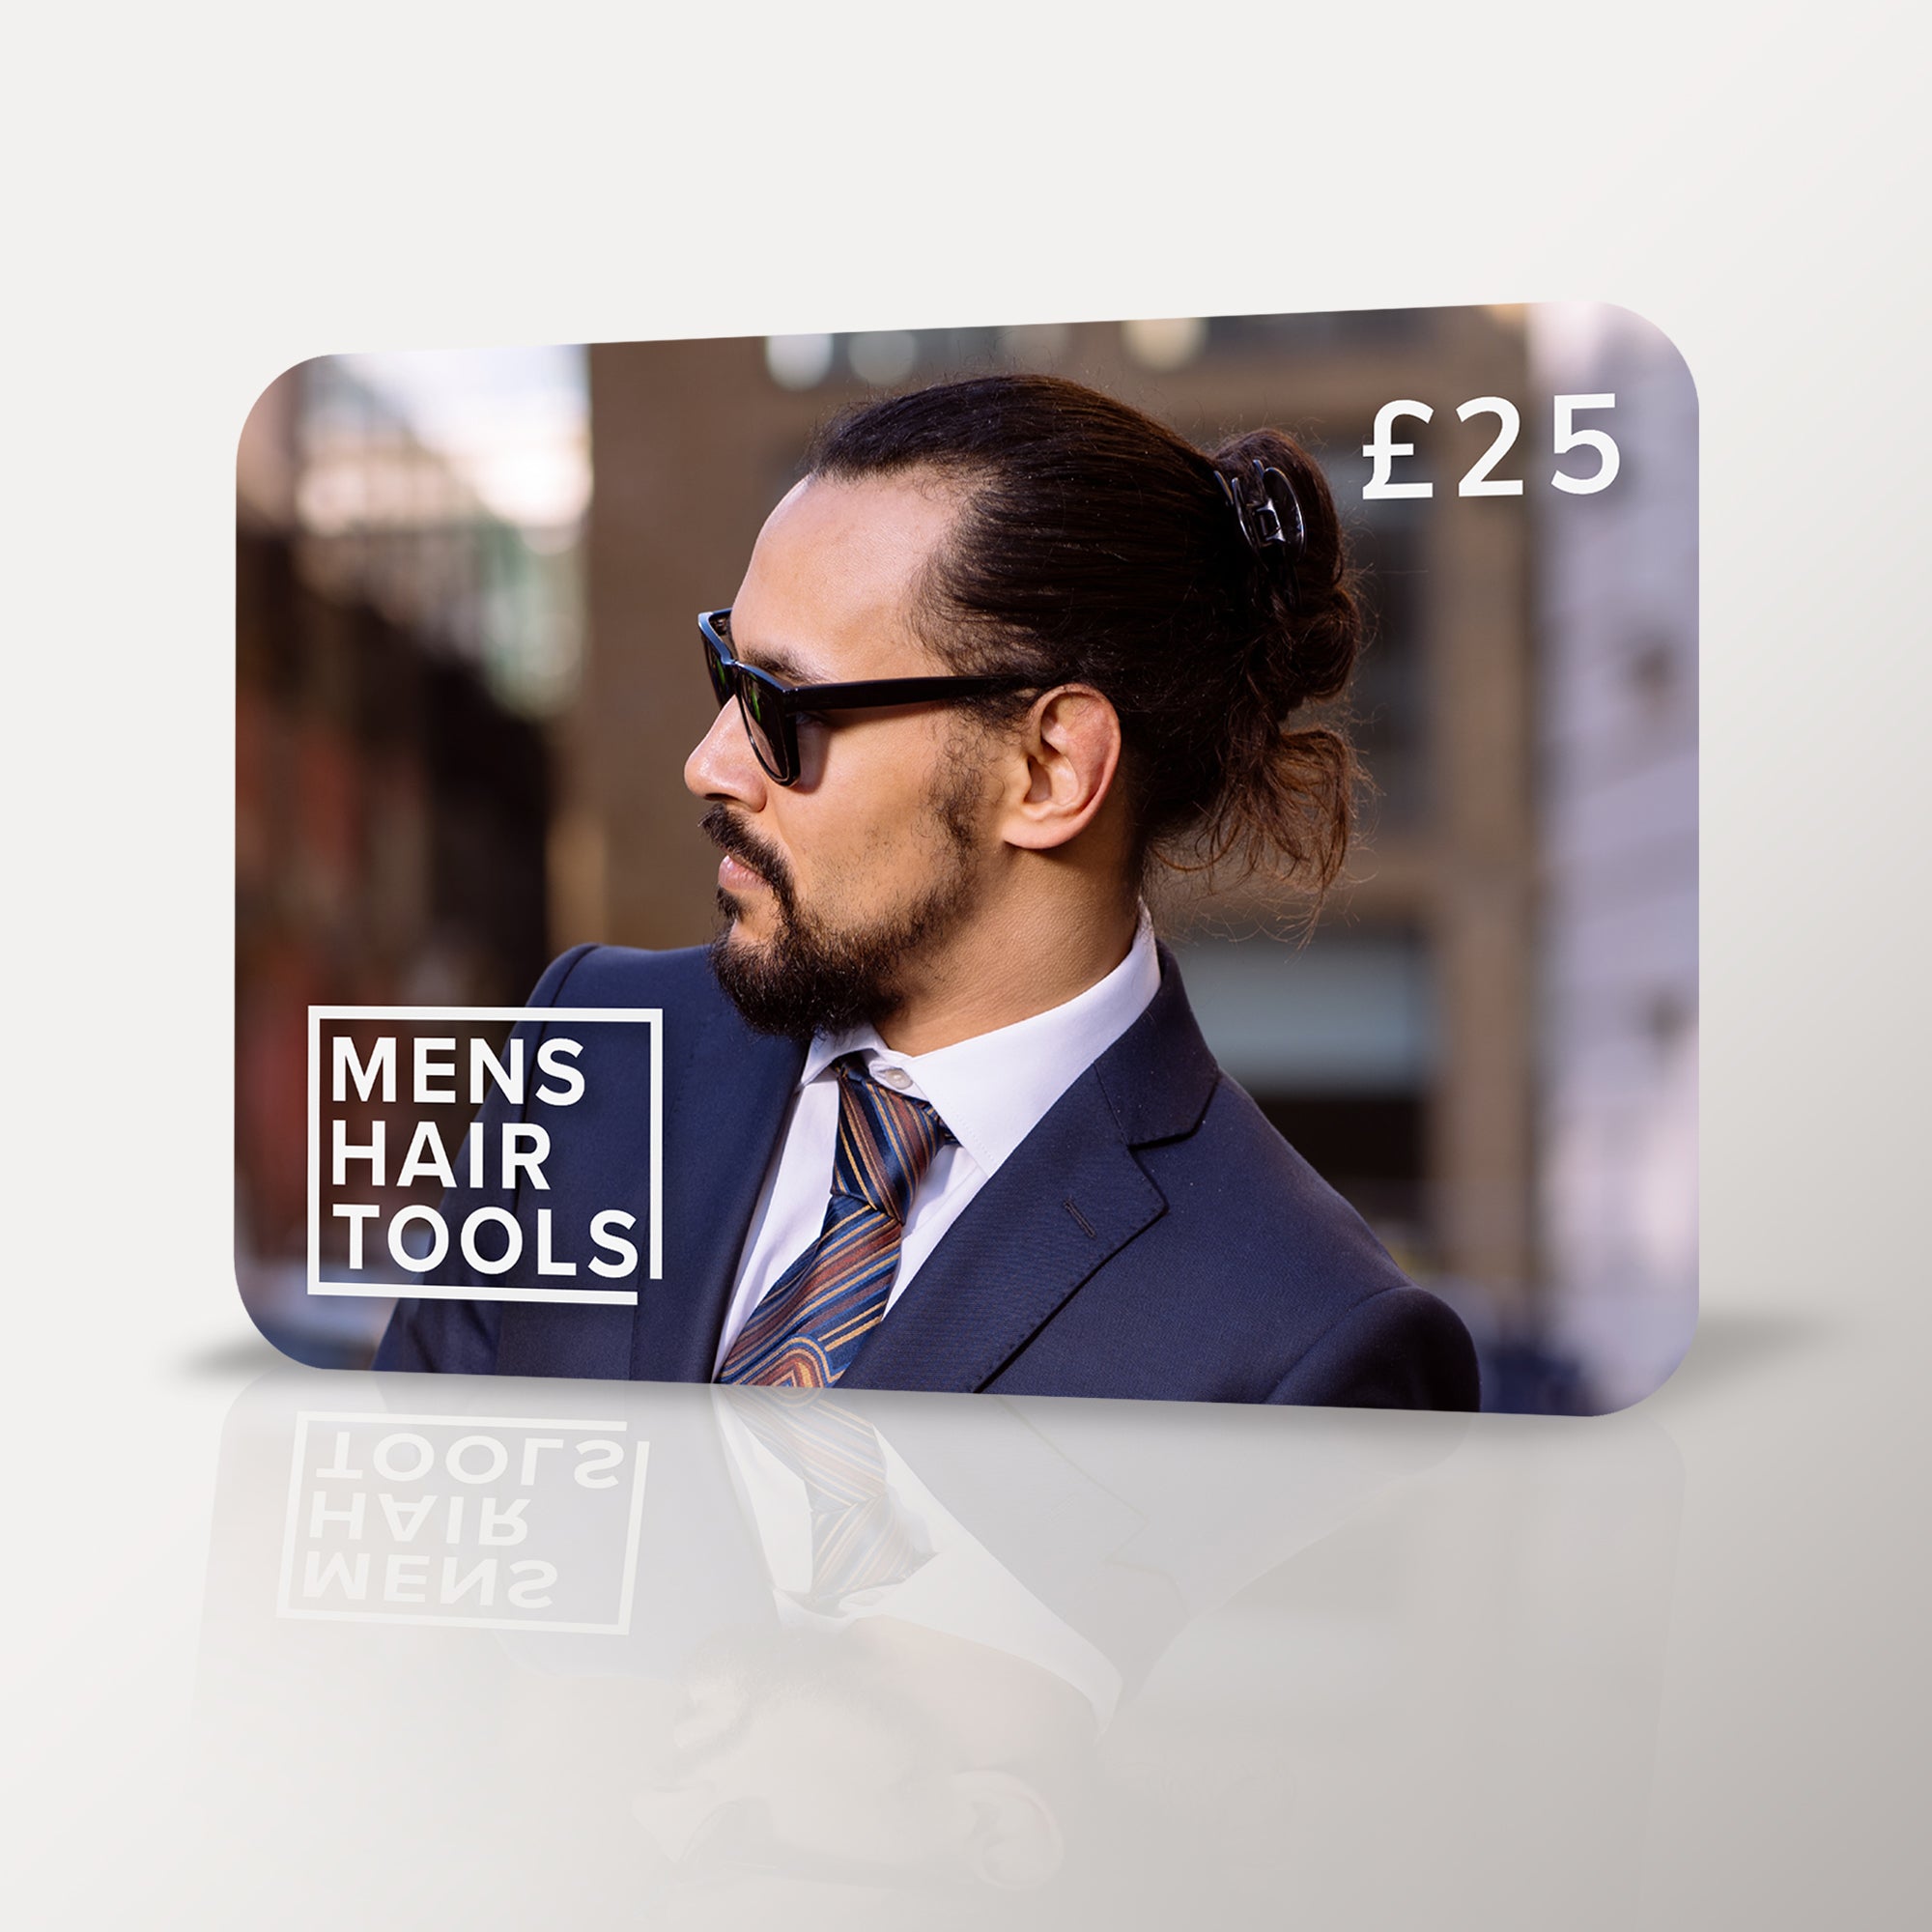 Mens-Hair-Tools-Gift-Card